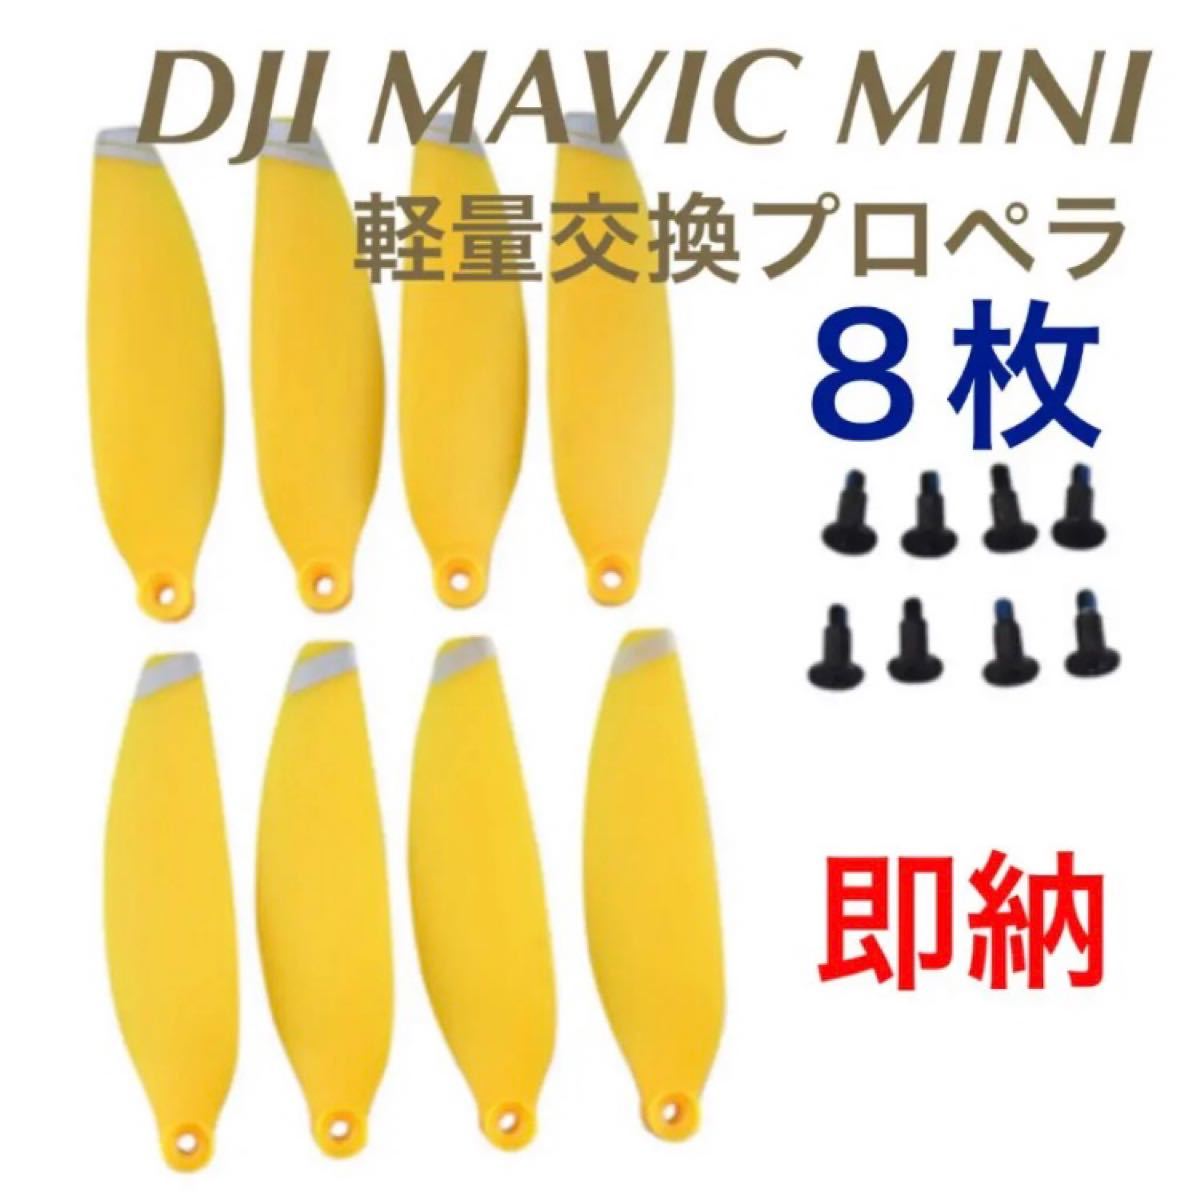 ★新色 ☆Mavic mini 交換プロペラ ☆スプリング黄色